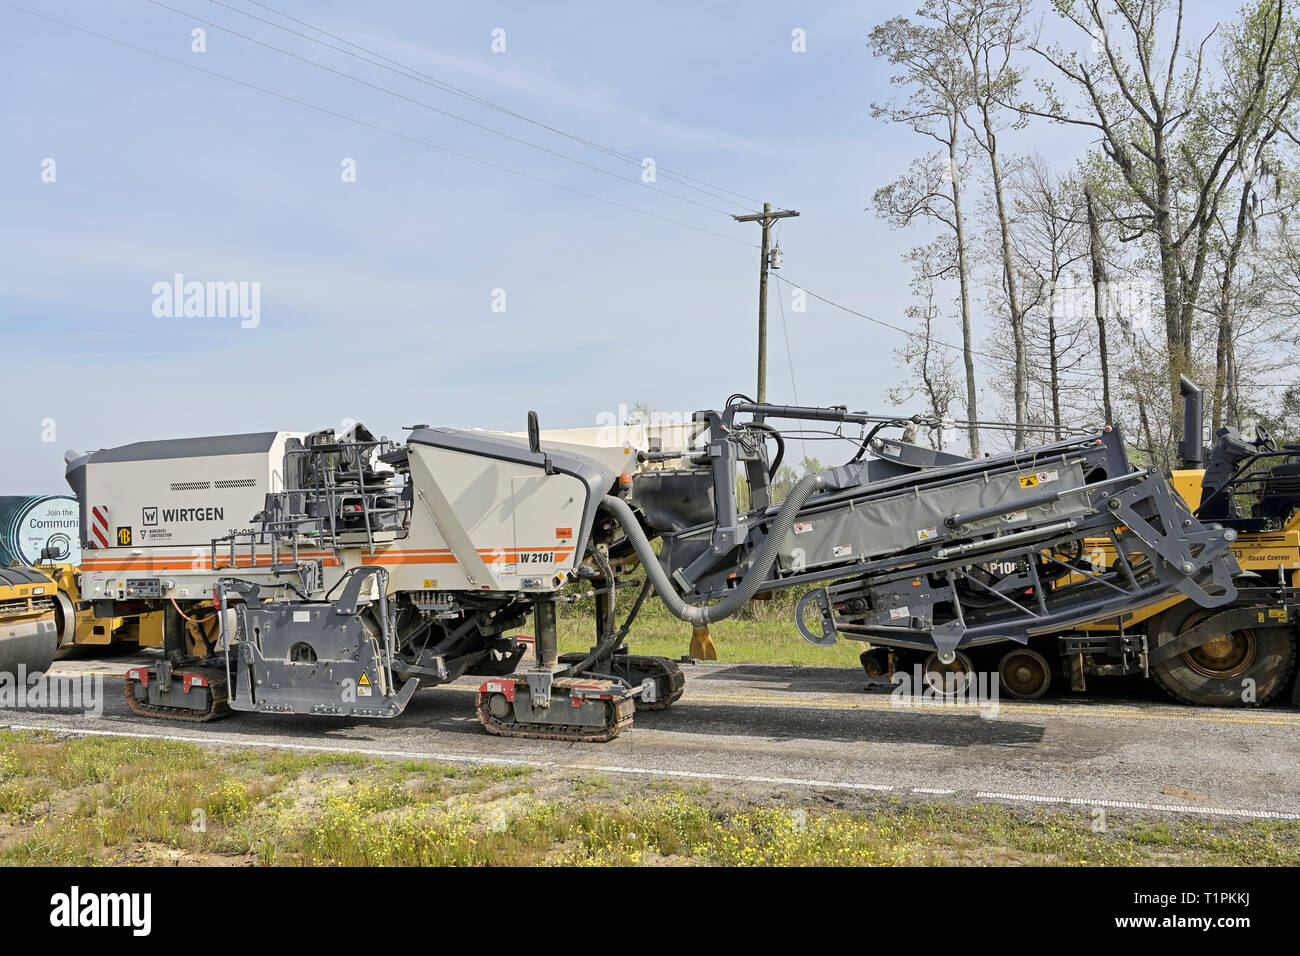 Wirtgen W210i Asphalt Grinder, Straßen pflastern Maschine sitzen in Montgomery Alabama, USA im Leerlauf. Stockfoto